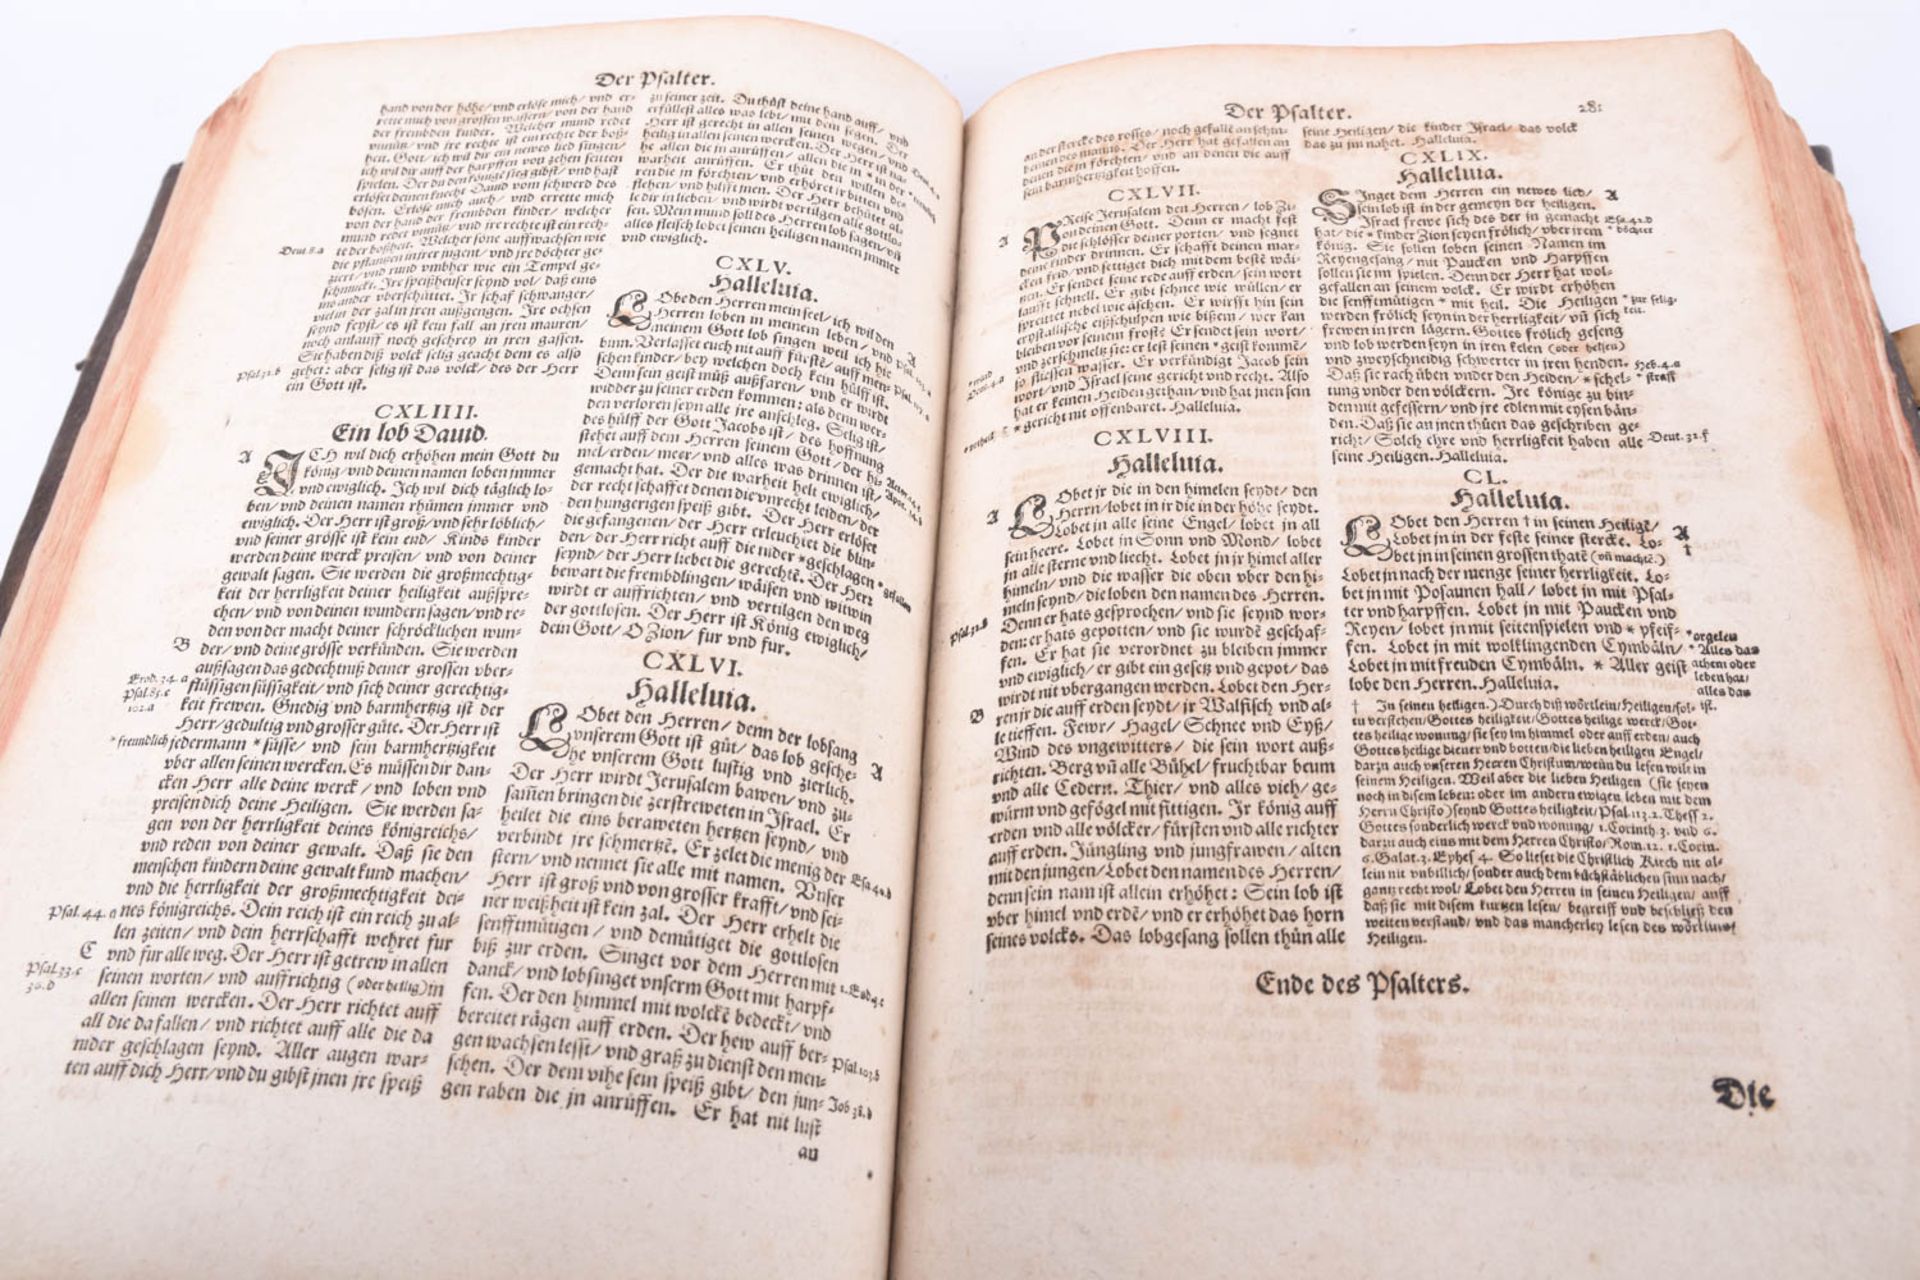 Bibel, 1610 - Image 15 of 17